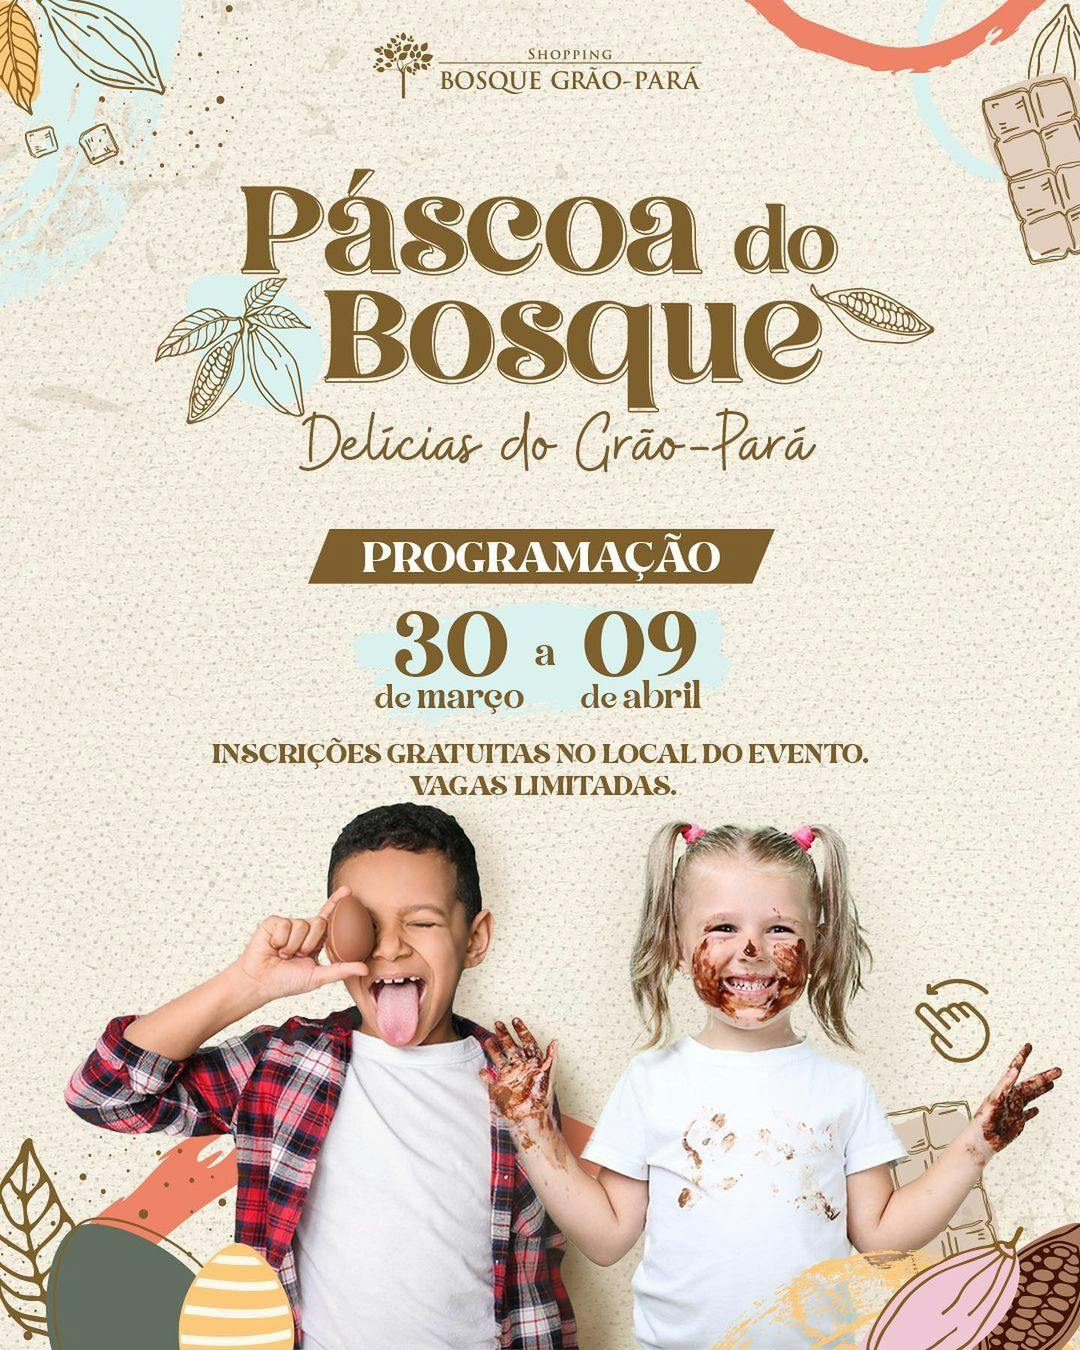 Shopping Bosque Grão-Pará - Play Games, a diversão está aqui